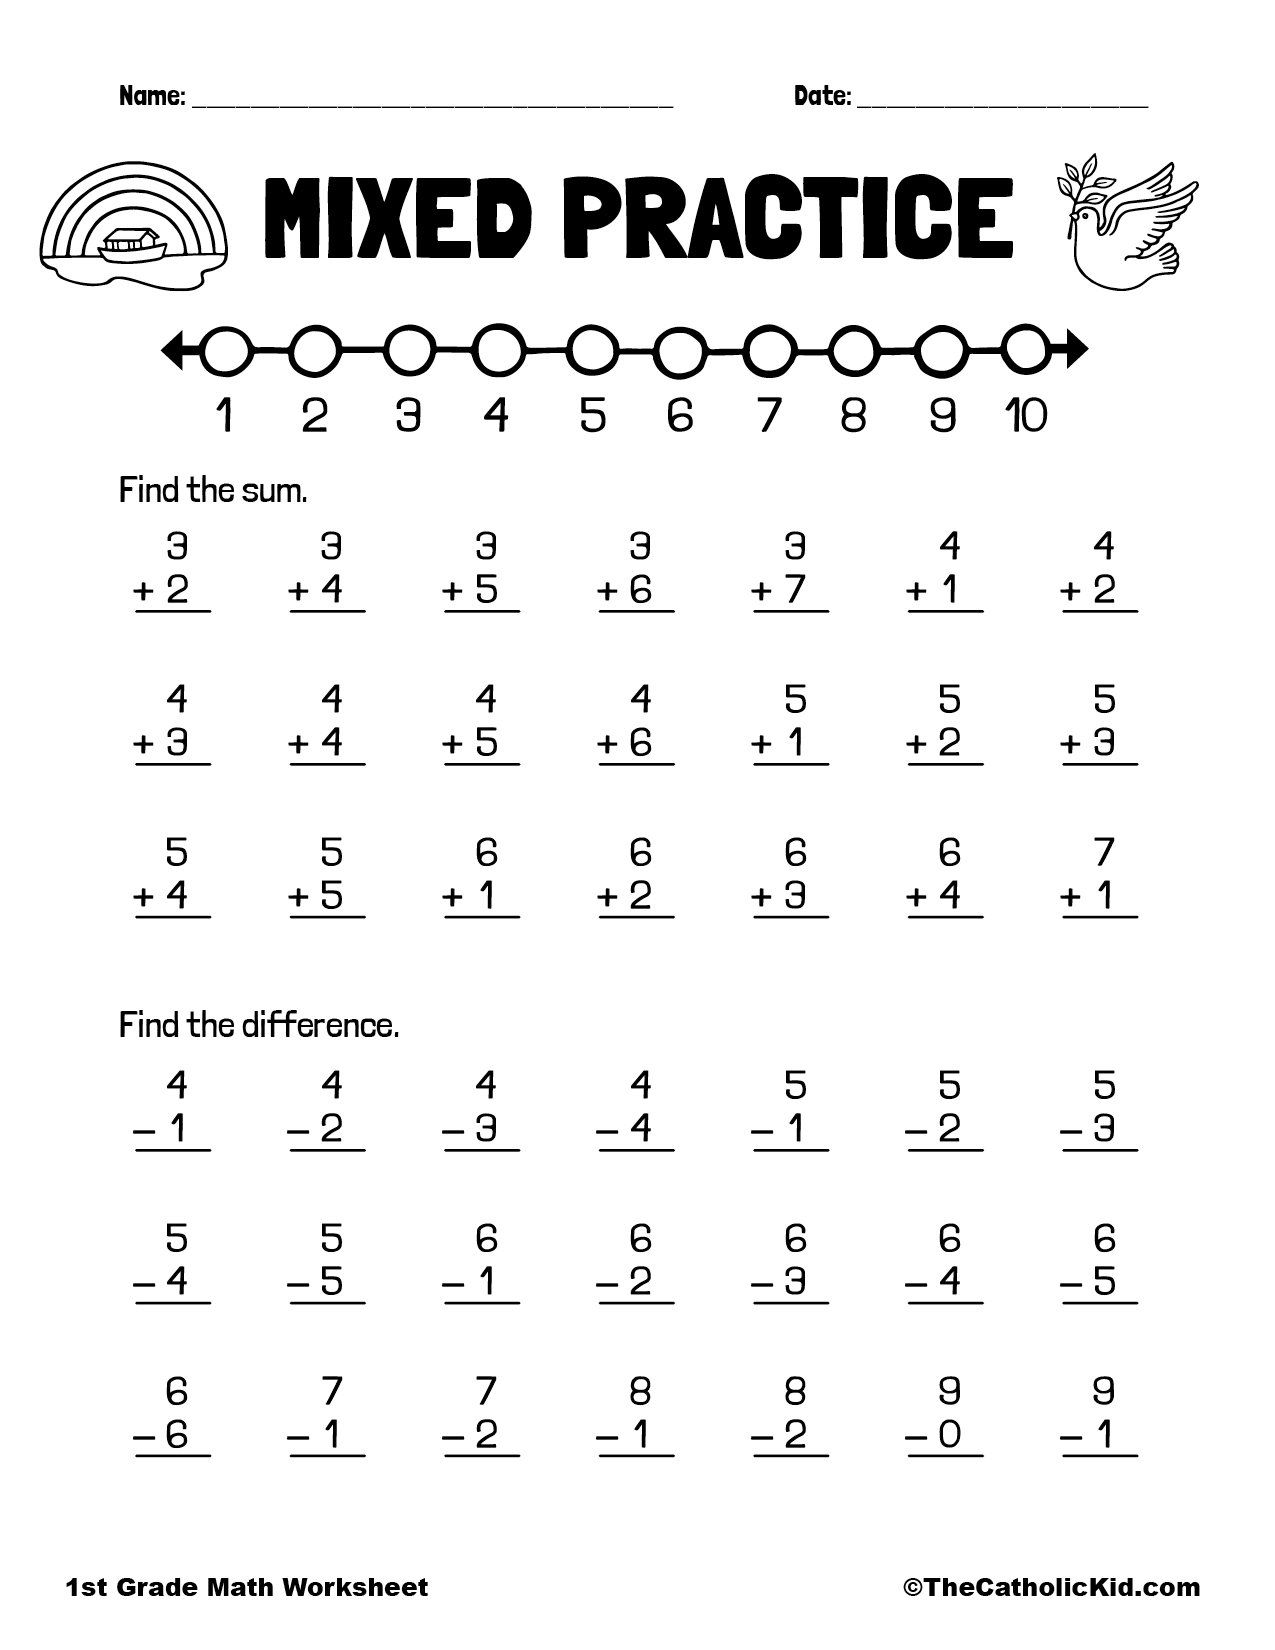 1st Grade Multiplication Worksheets